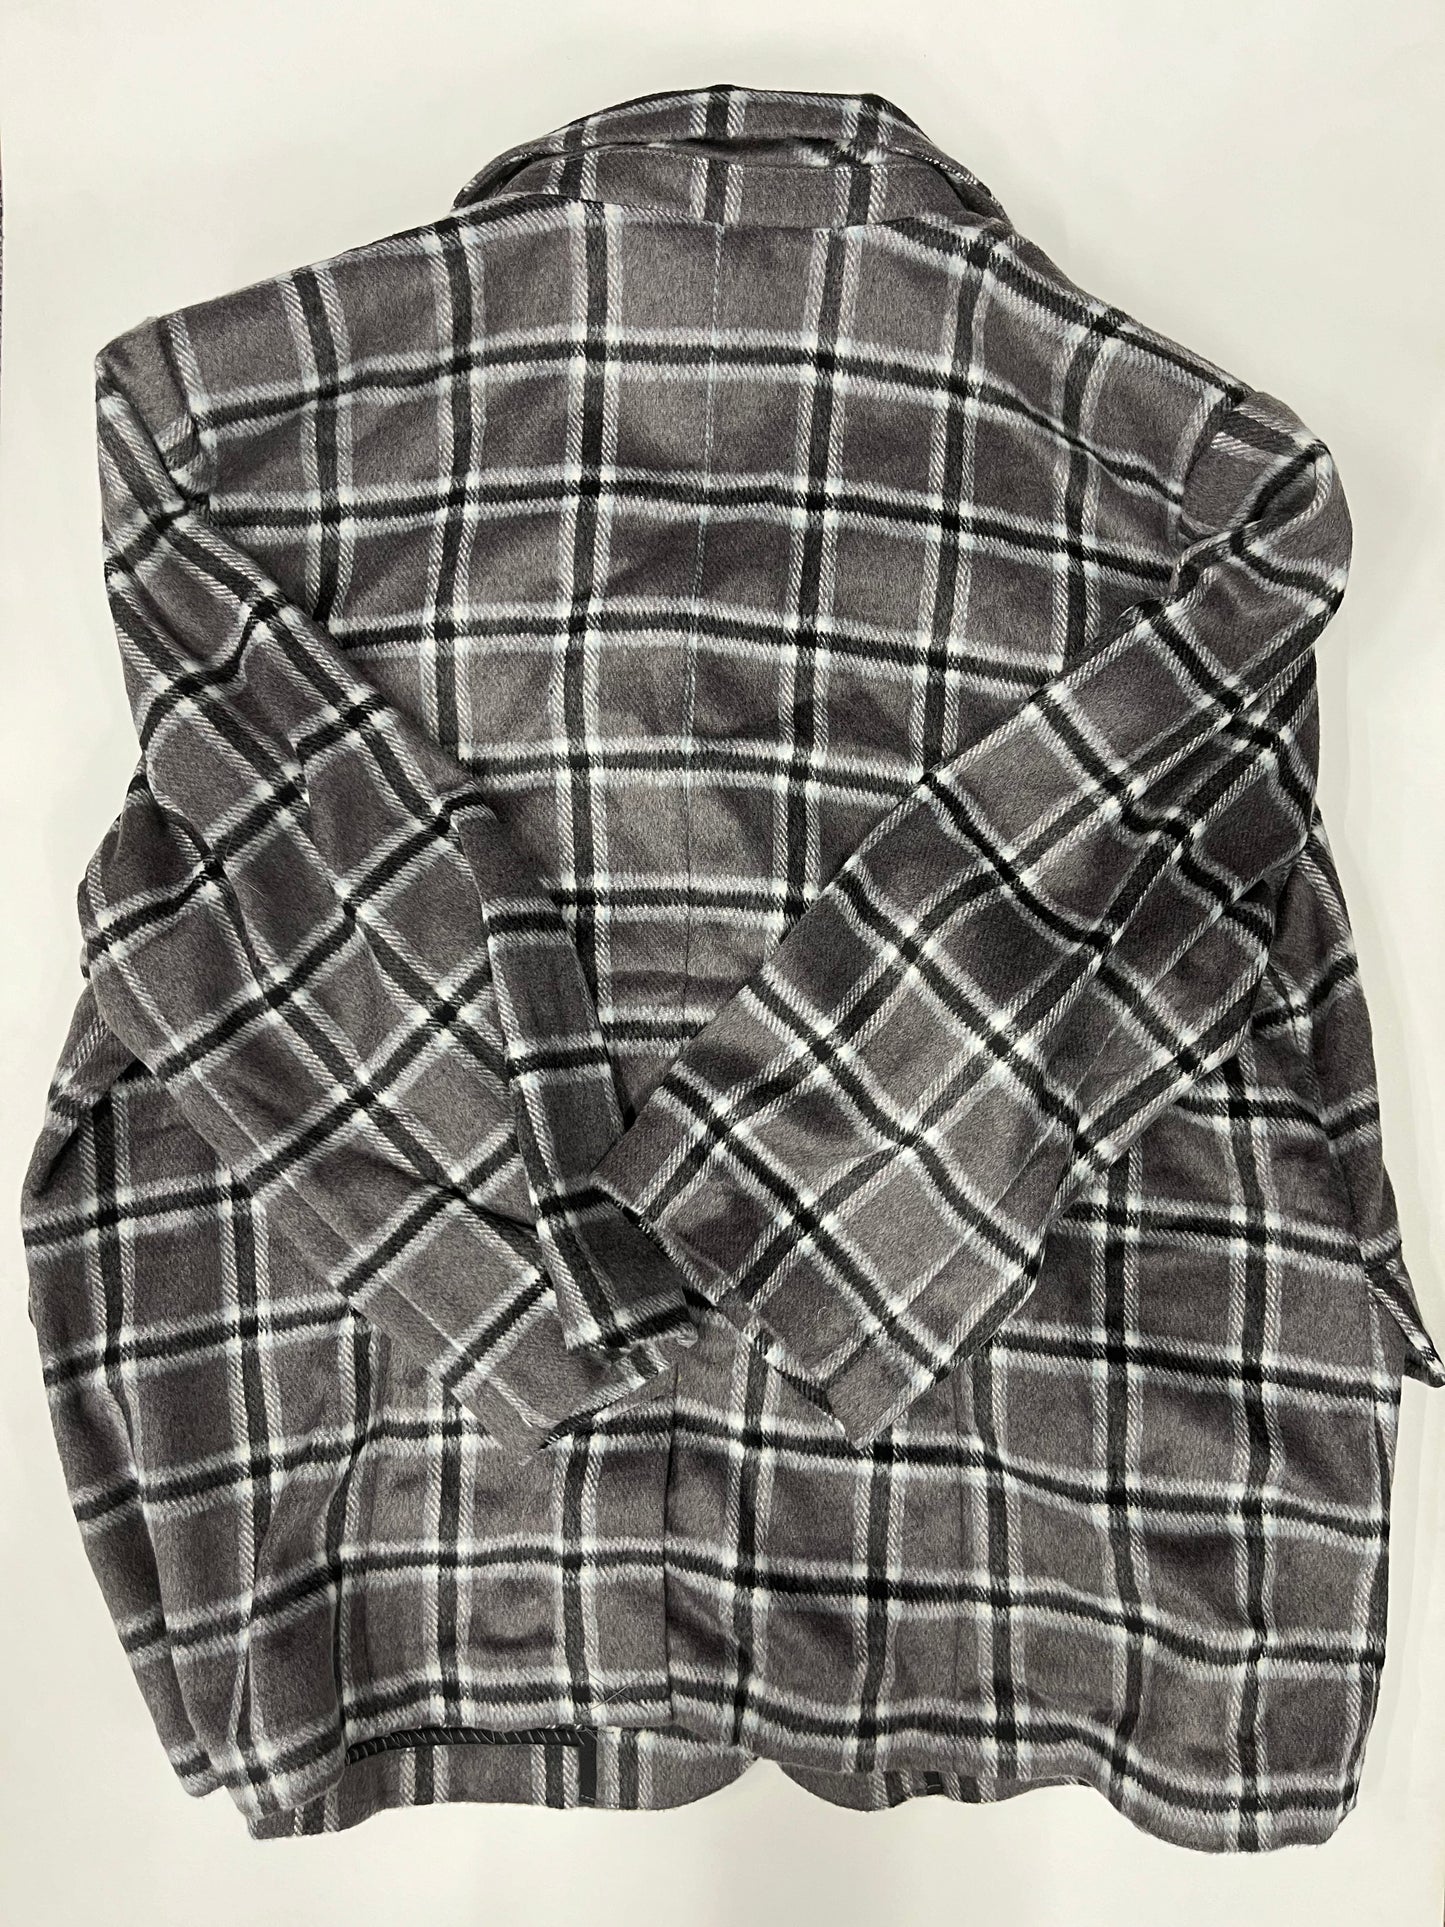 Blazer Jacket By Laurie Felt  Size: 2x